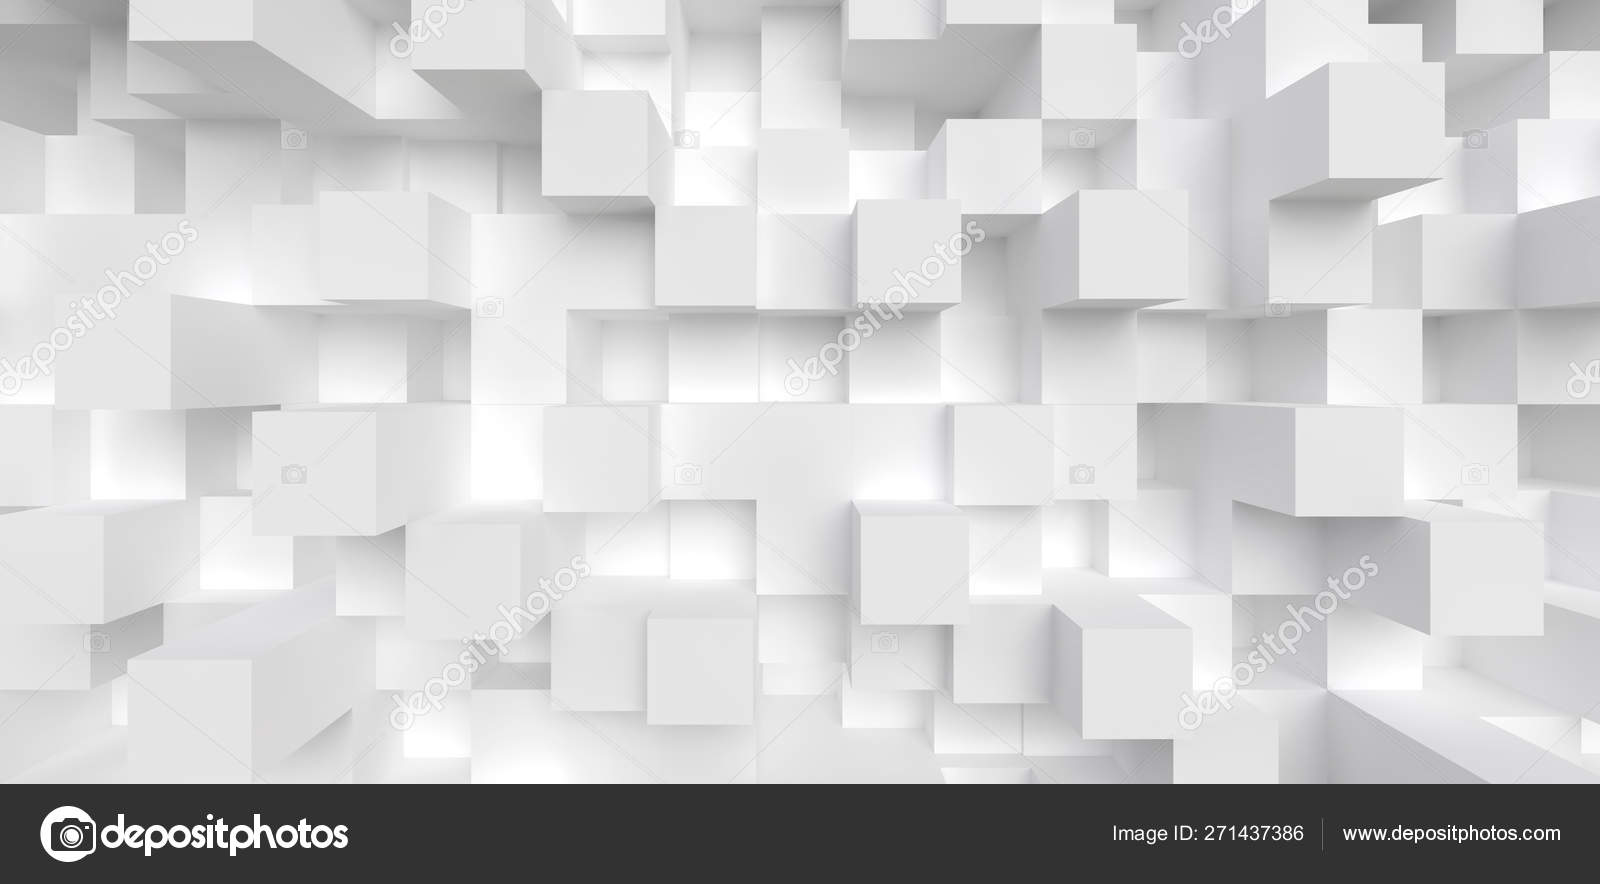 Nếu bạn tìm kiếm một hình nền hình học trừu tượng tinh tế và đẹp mắt, thì đừng bỏ qua khối hộp trắng 3D Render ảnh cổ phiếu. Với việc sử dụng đường nét tinh tế và hình dạng hiện đại, nó là một lựa chọn hoàn hảo để tạo ra sự ấn tượng cho bất kỳ thiết kế nào của bạn.